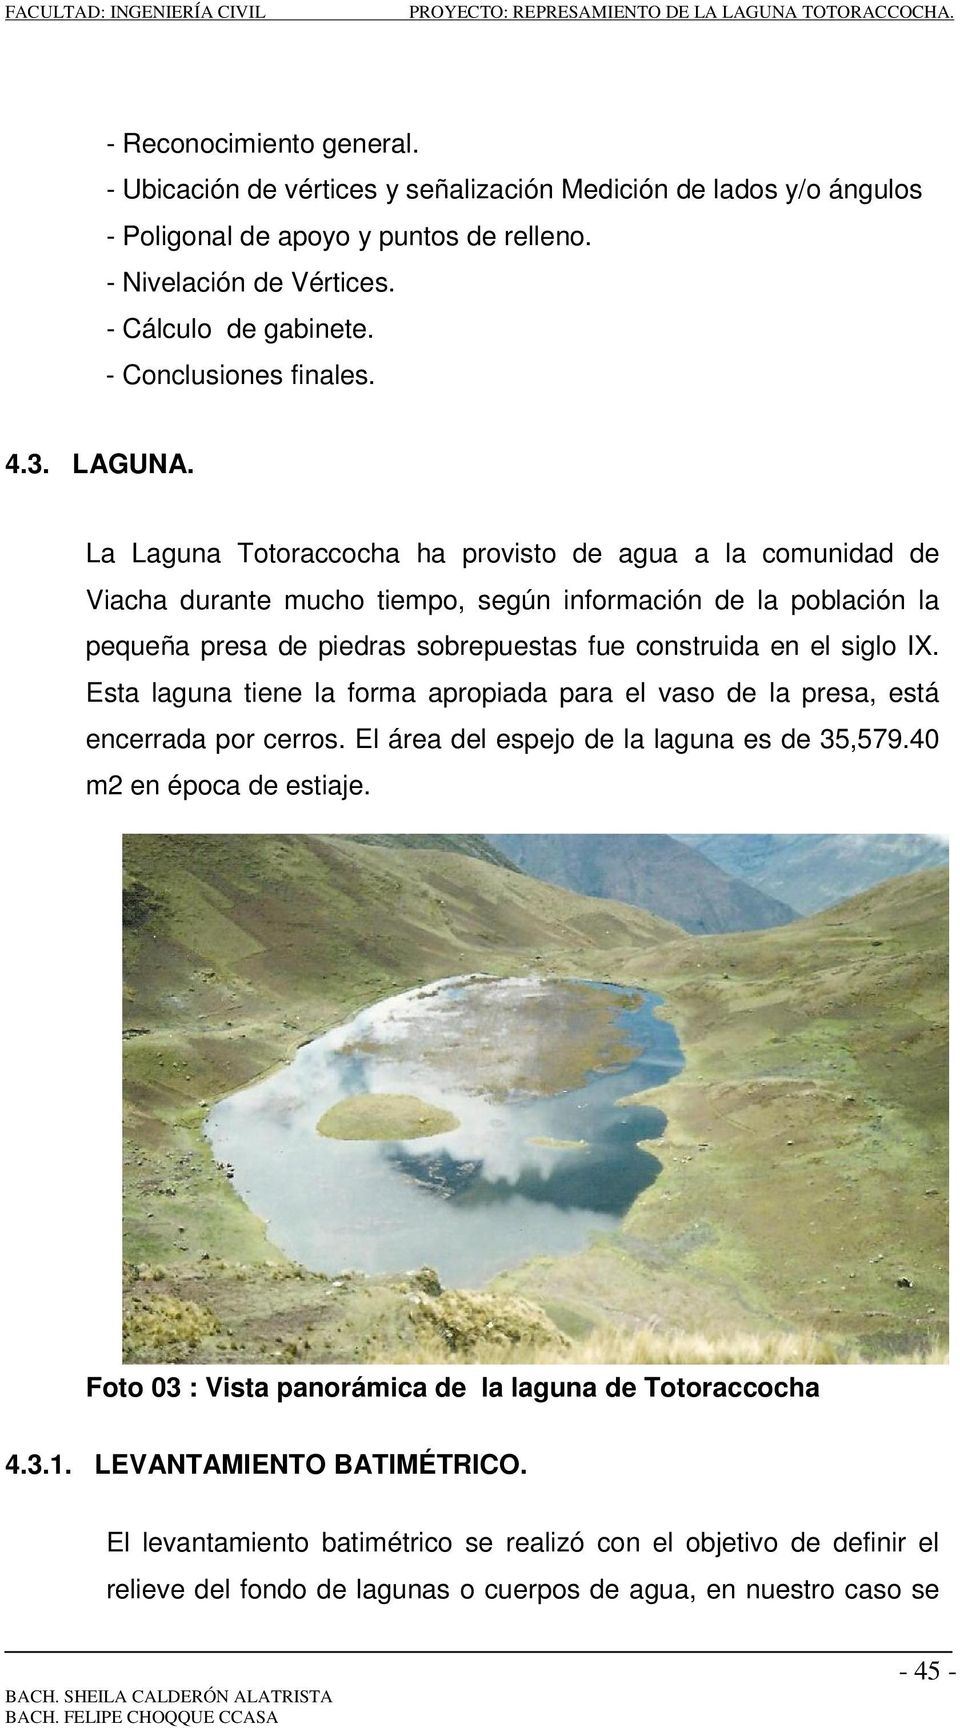 La Laguna Totoraccocha ha provisto de agua a la comunidad de Viacha durante mucho tiempo, según información de la población la pequeña presa de piedras sobrepuestas fue construida en el siglo IX.